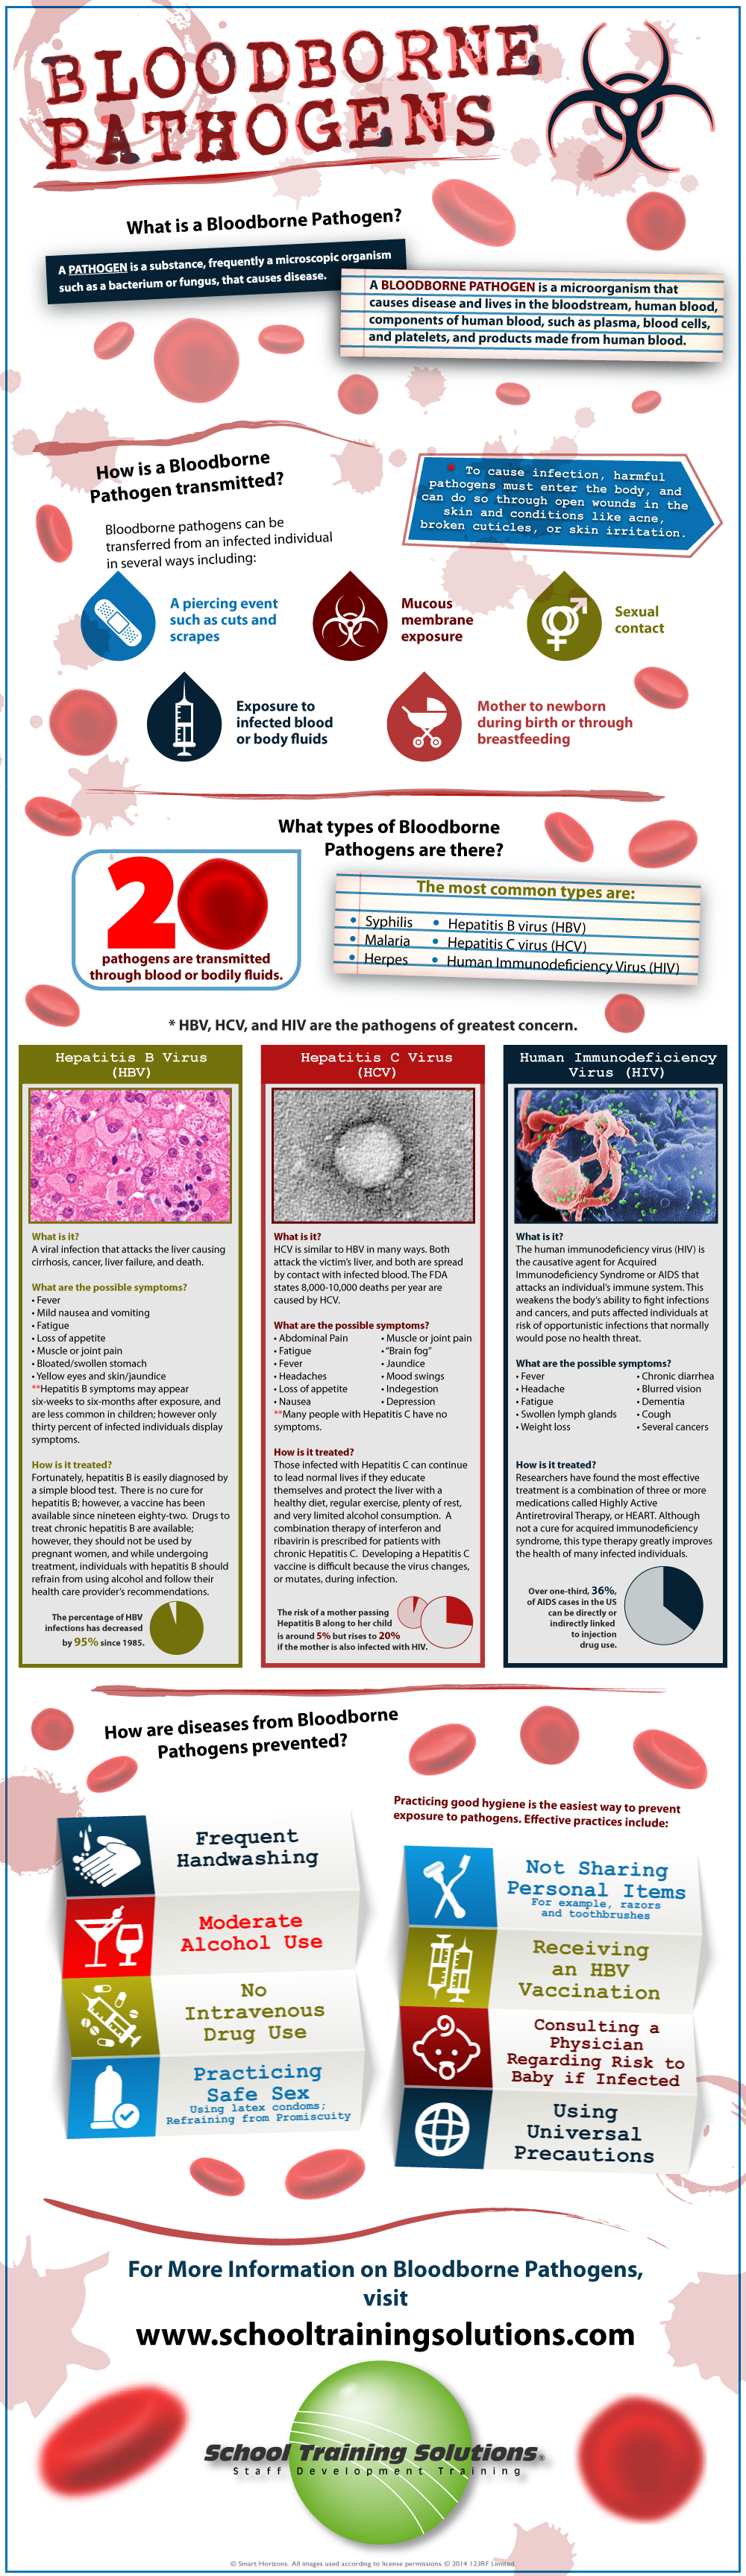 Bloodborne Pathogens Infographic